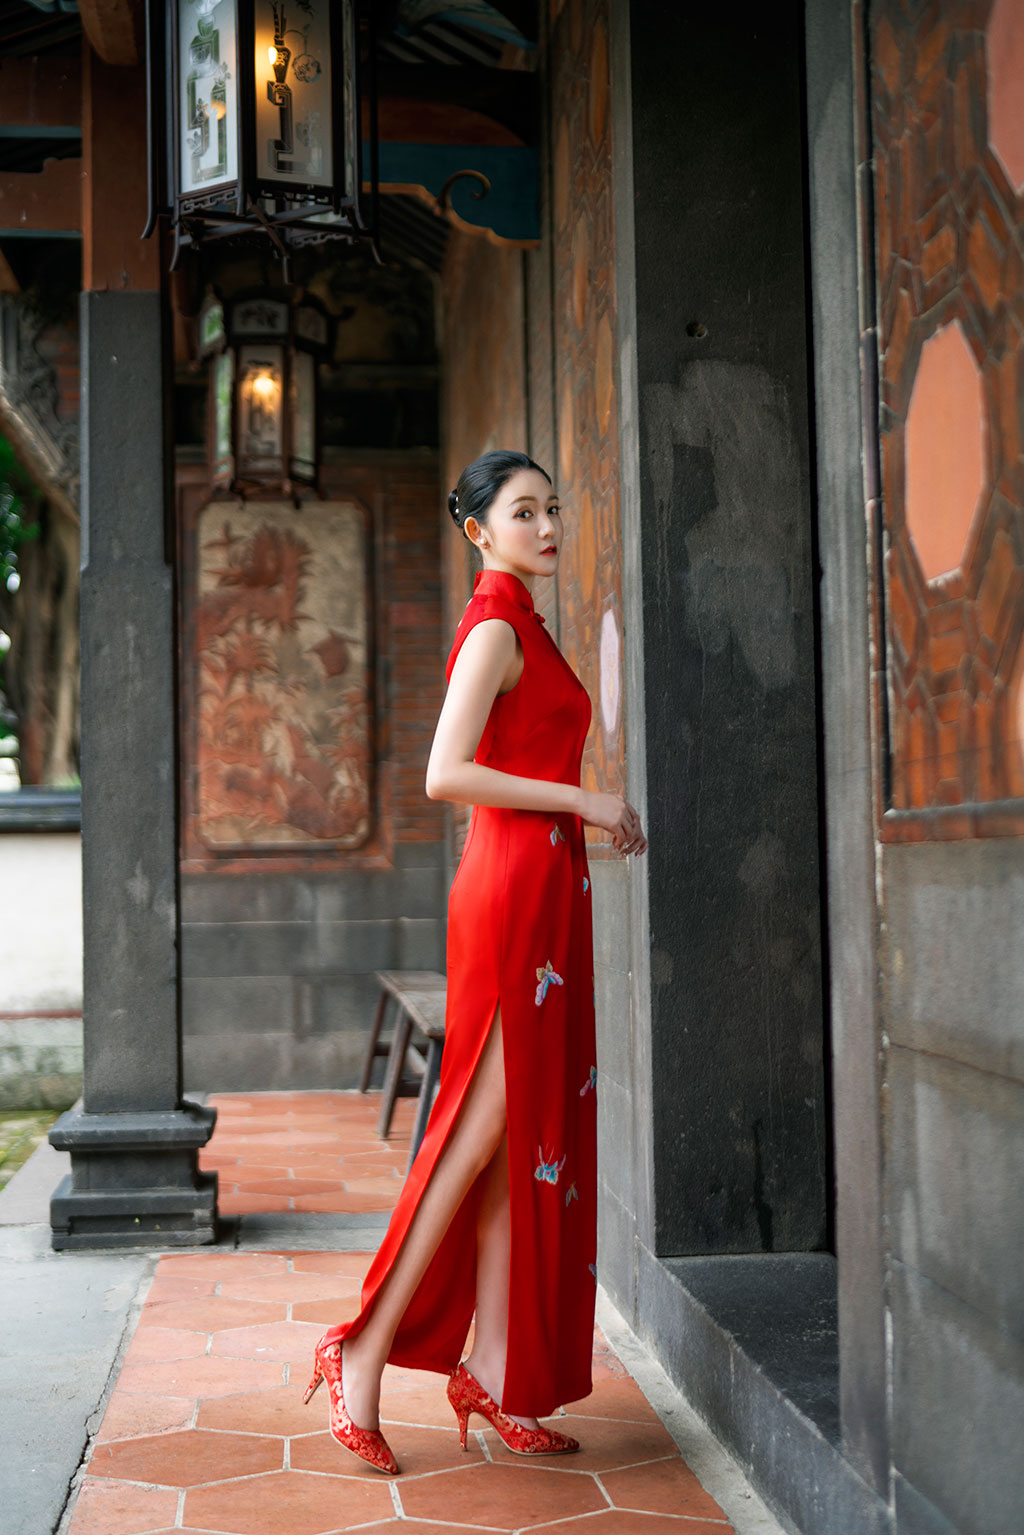  龍鳳褂婚紗,婚紗照,旗袍婚紗,中式婚紗,中國風婚紗 